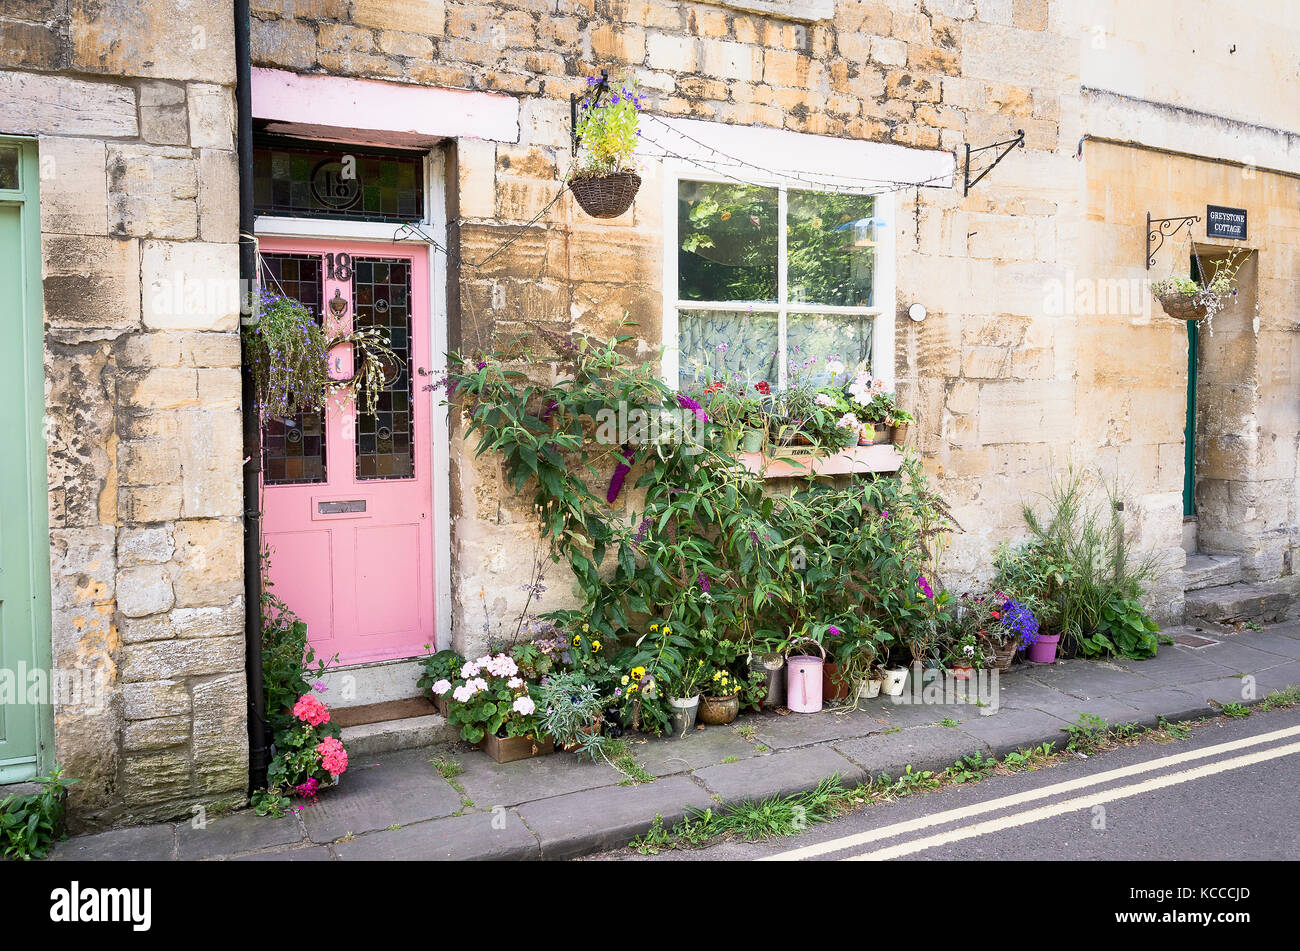 Une porte rose et un jardin à l'avant en pot pour une ville cottage dans le centre de Bradford on Avon Wiltshire England UK Banque D'Images